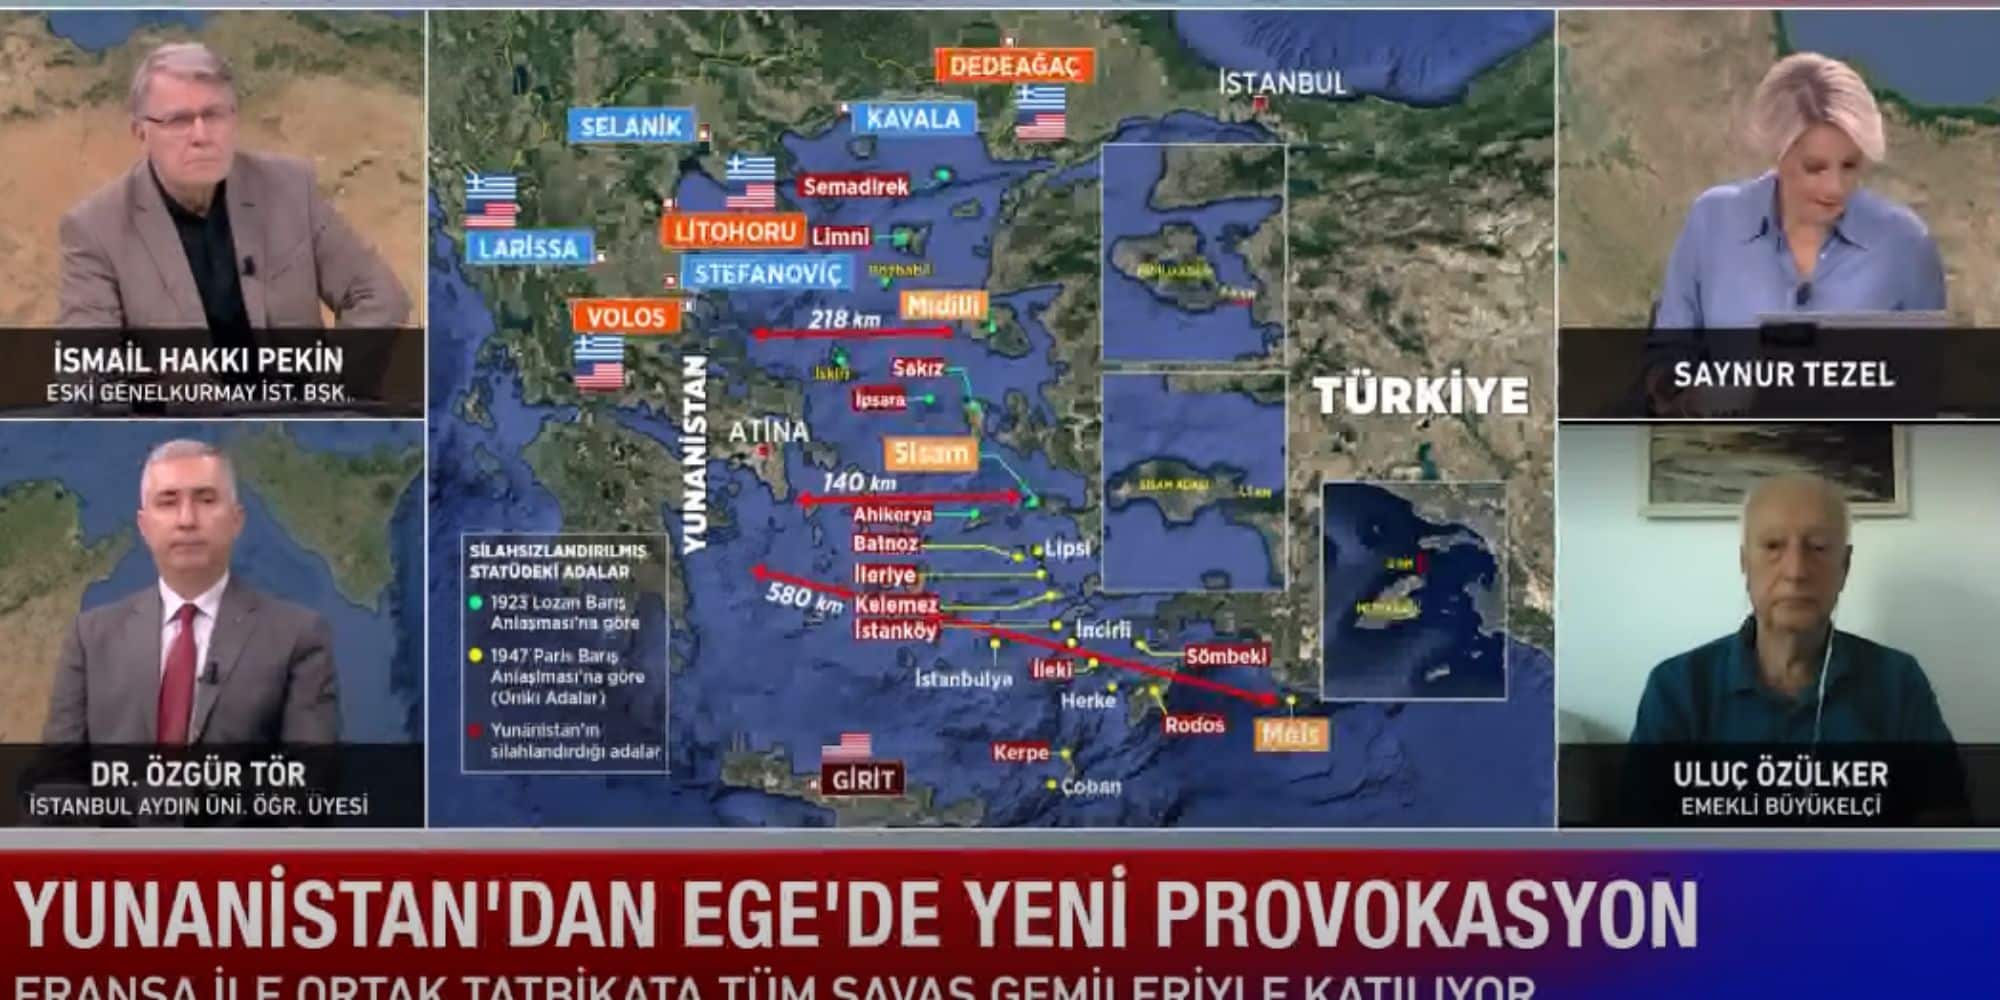 Εικόνα από τουρκικό πάνελ με τον χάρτη της Ελλάδας